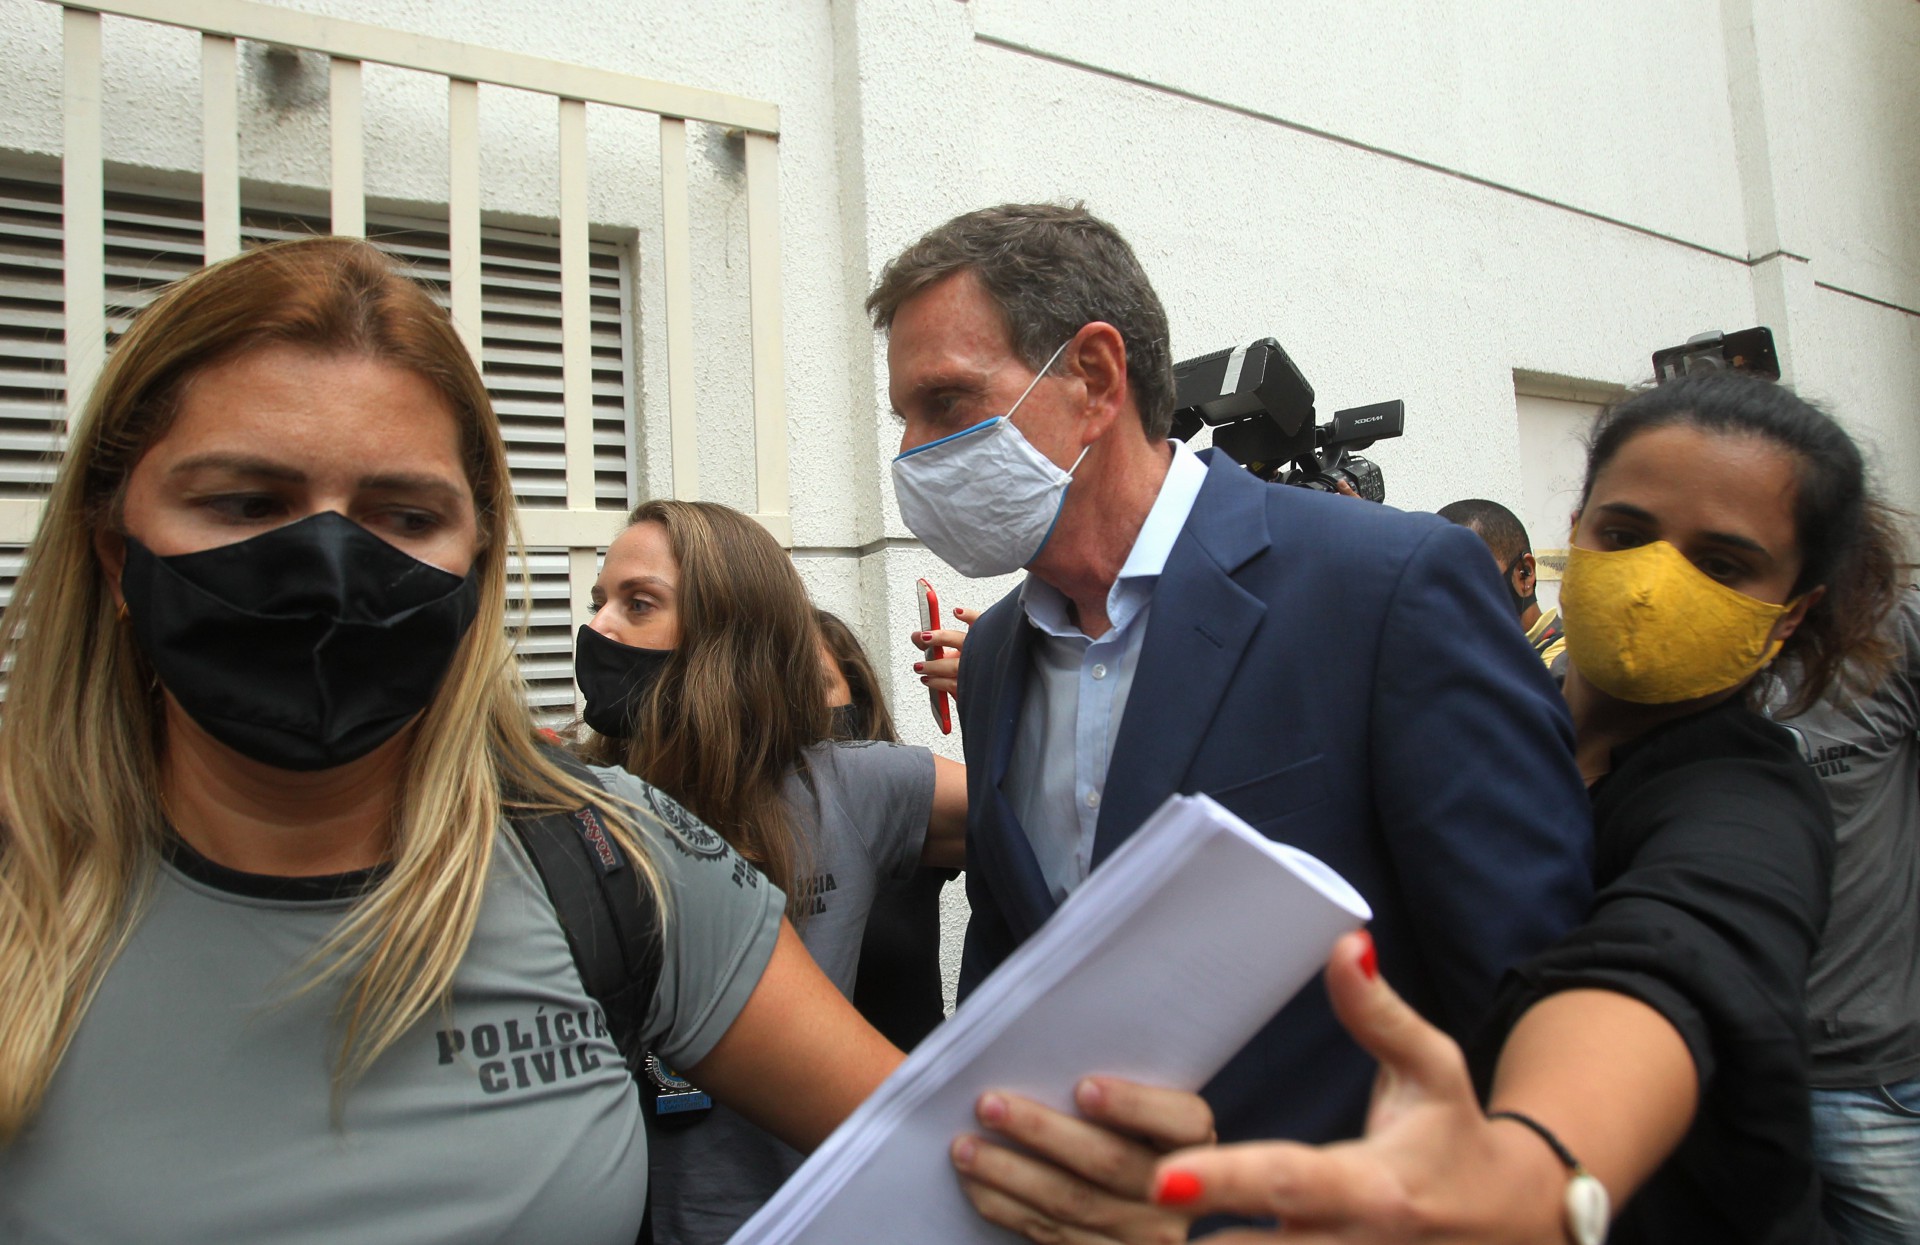 Prefeito do Rio, Marcelo Crivella é preso. Na foto, Crivella deixa a cidade da Policia - Estefan Radovicz / Agência O Dia